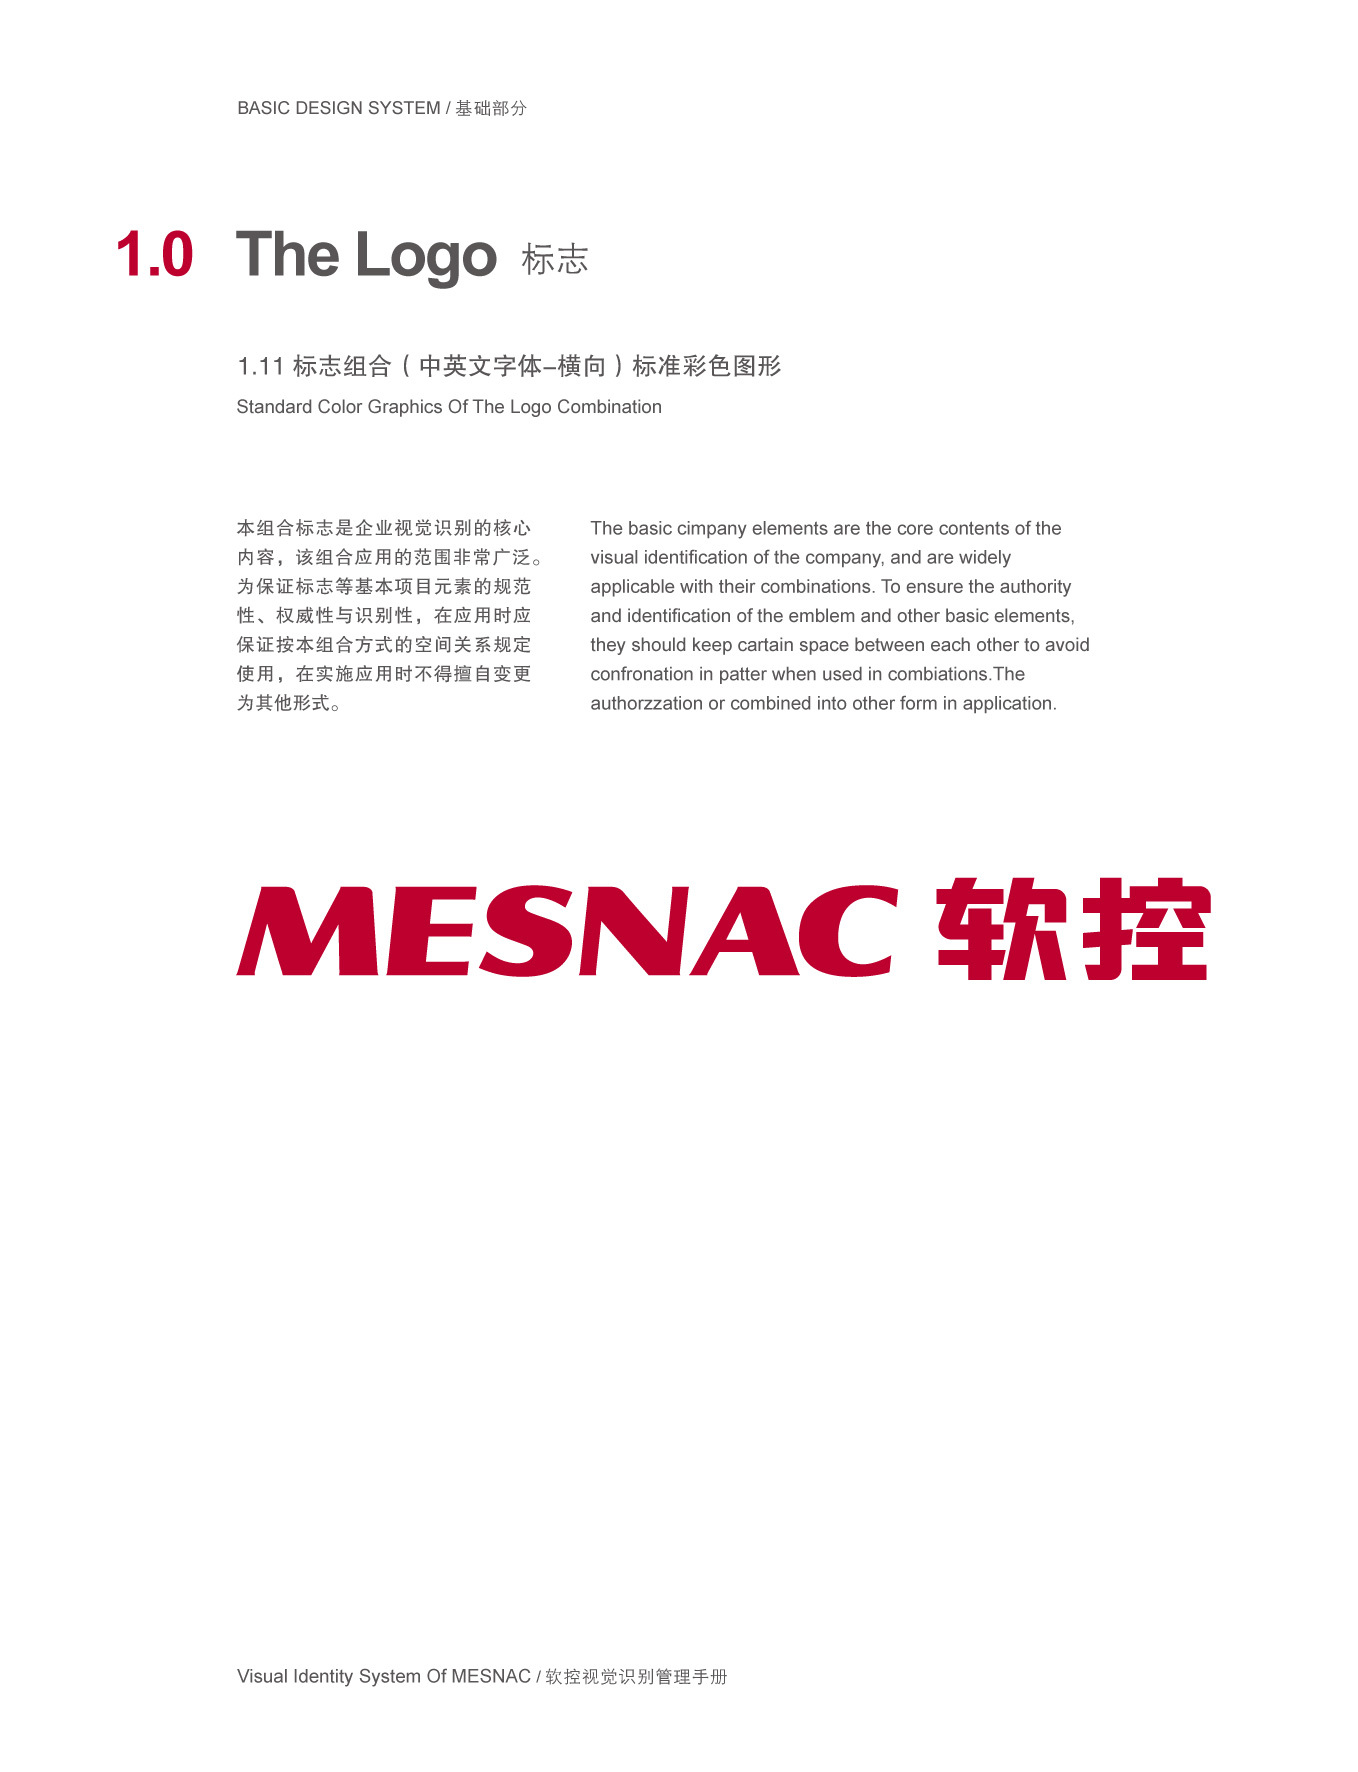 上市公司-軟控集團品牌logo及VI設計圖10